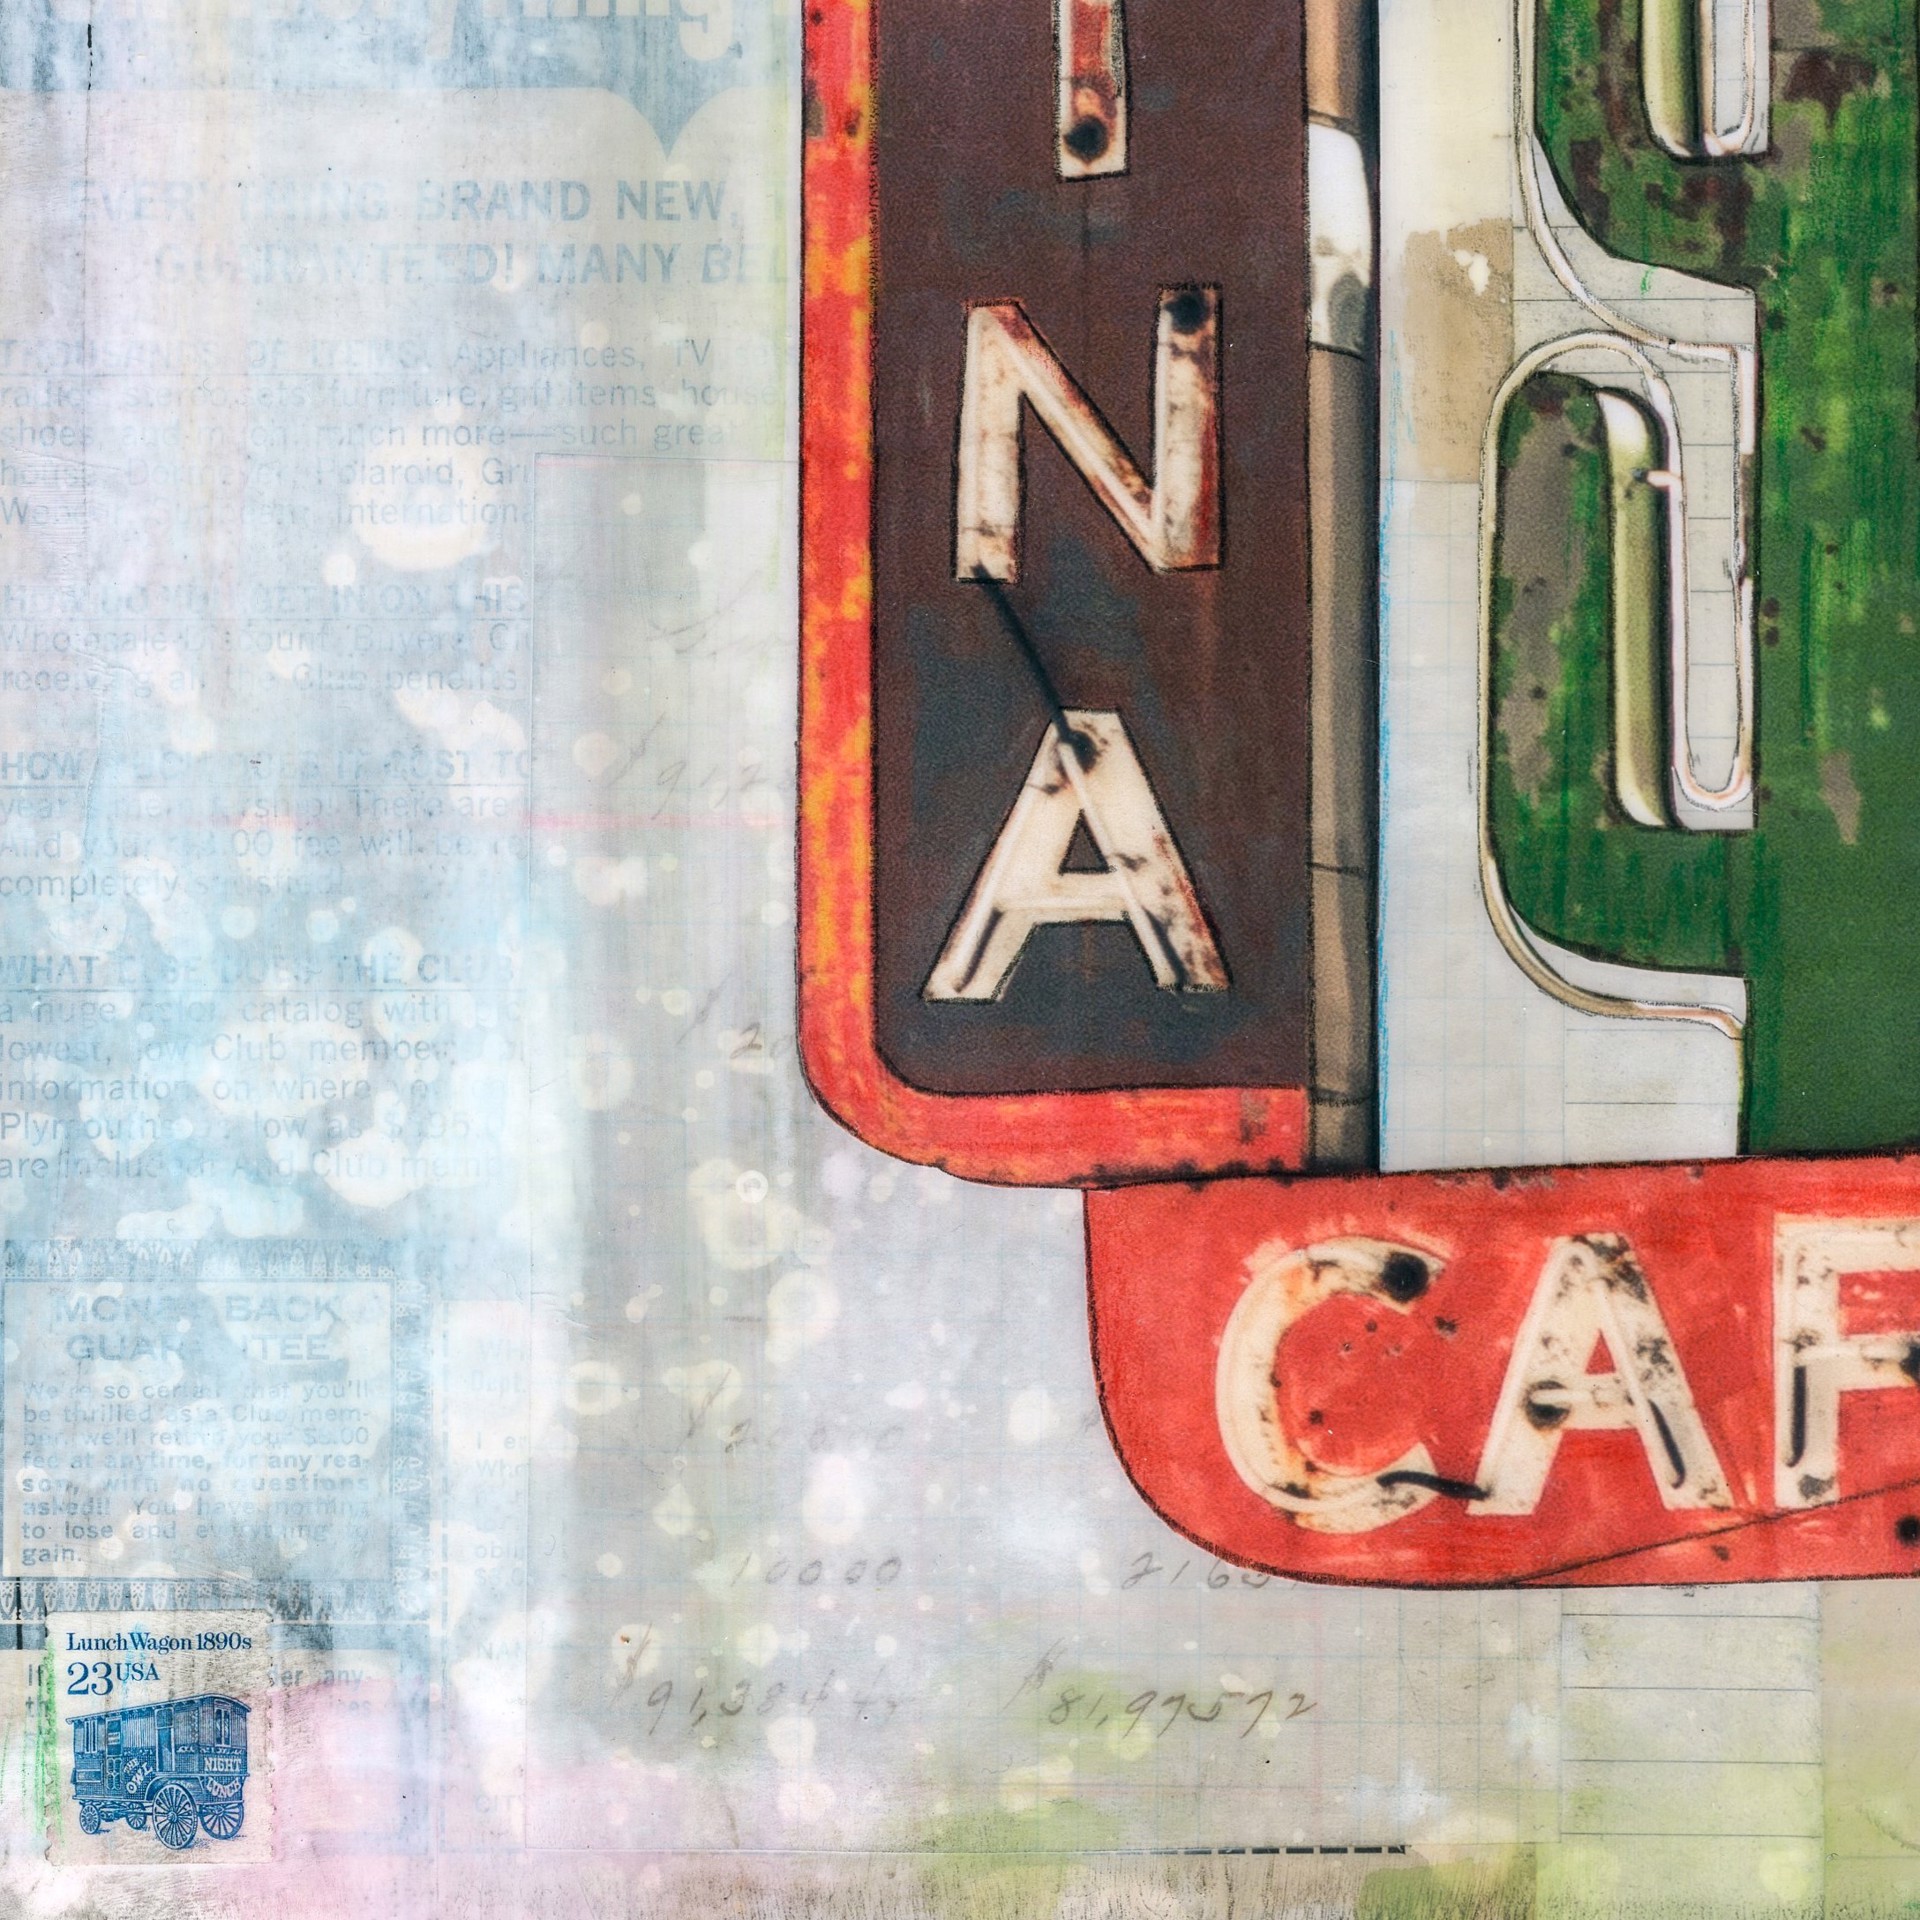 Cantina Bar Cafe by JC Spock